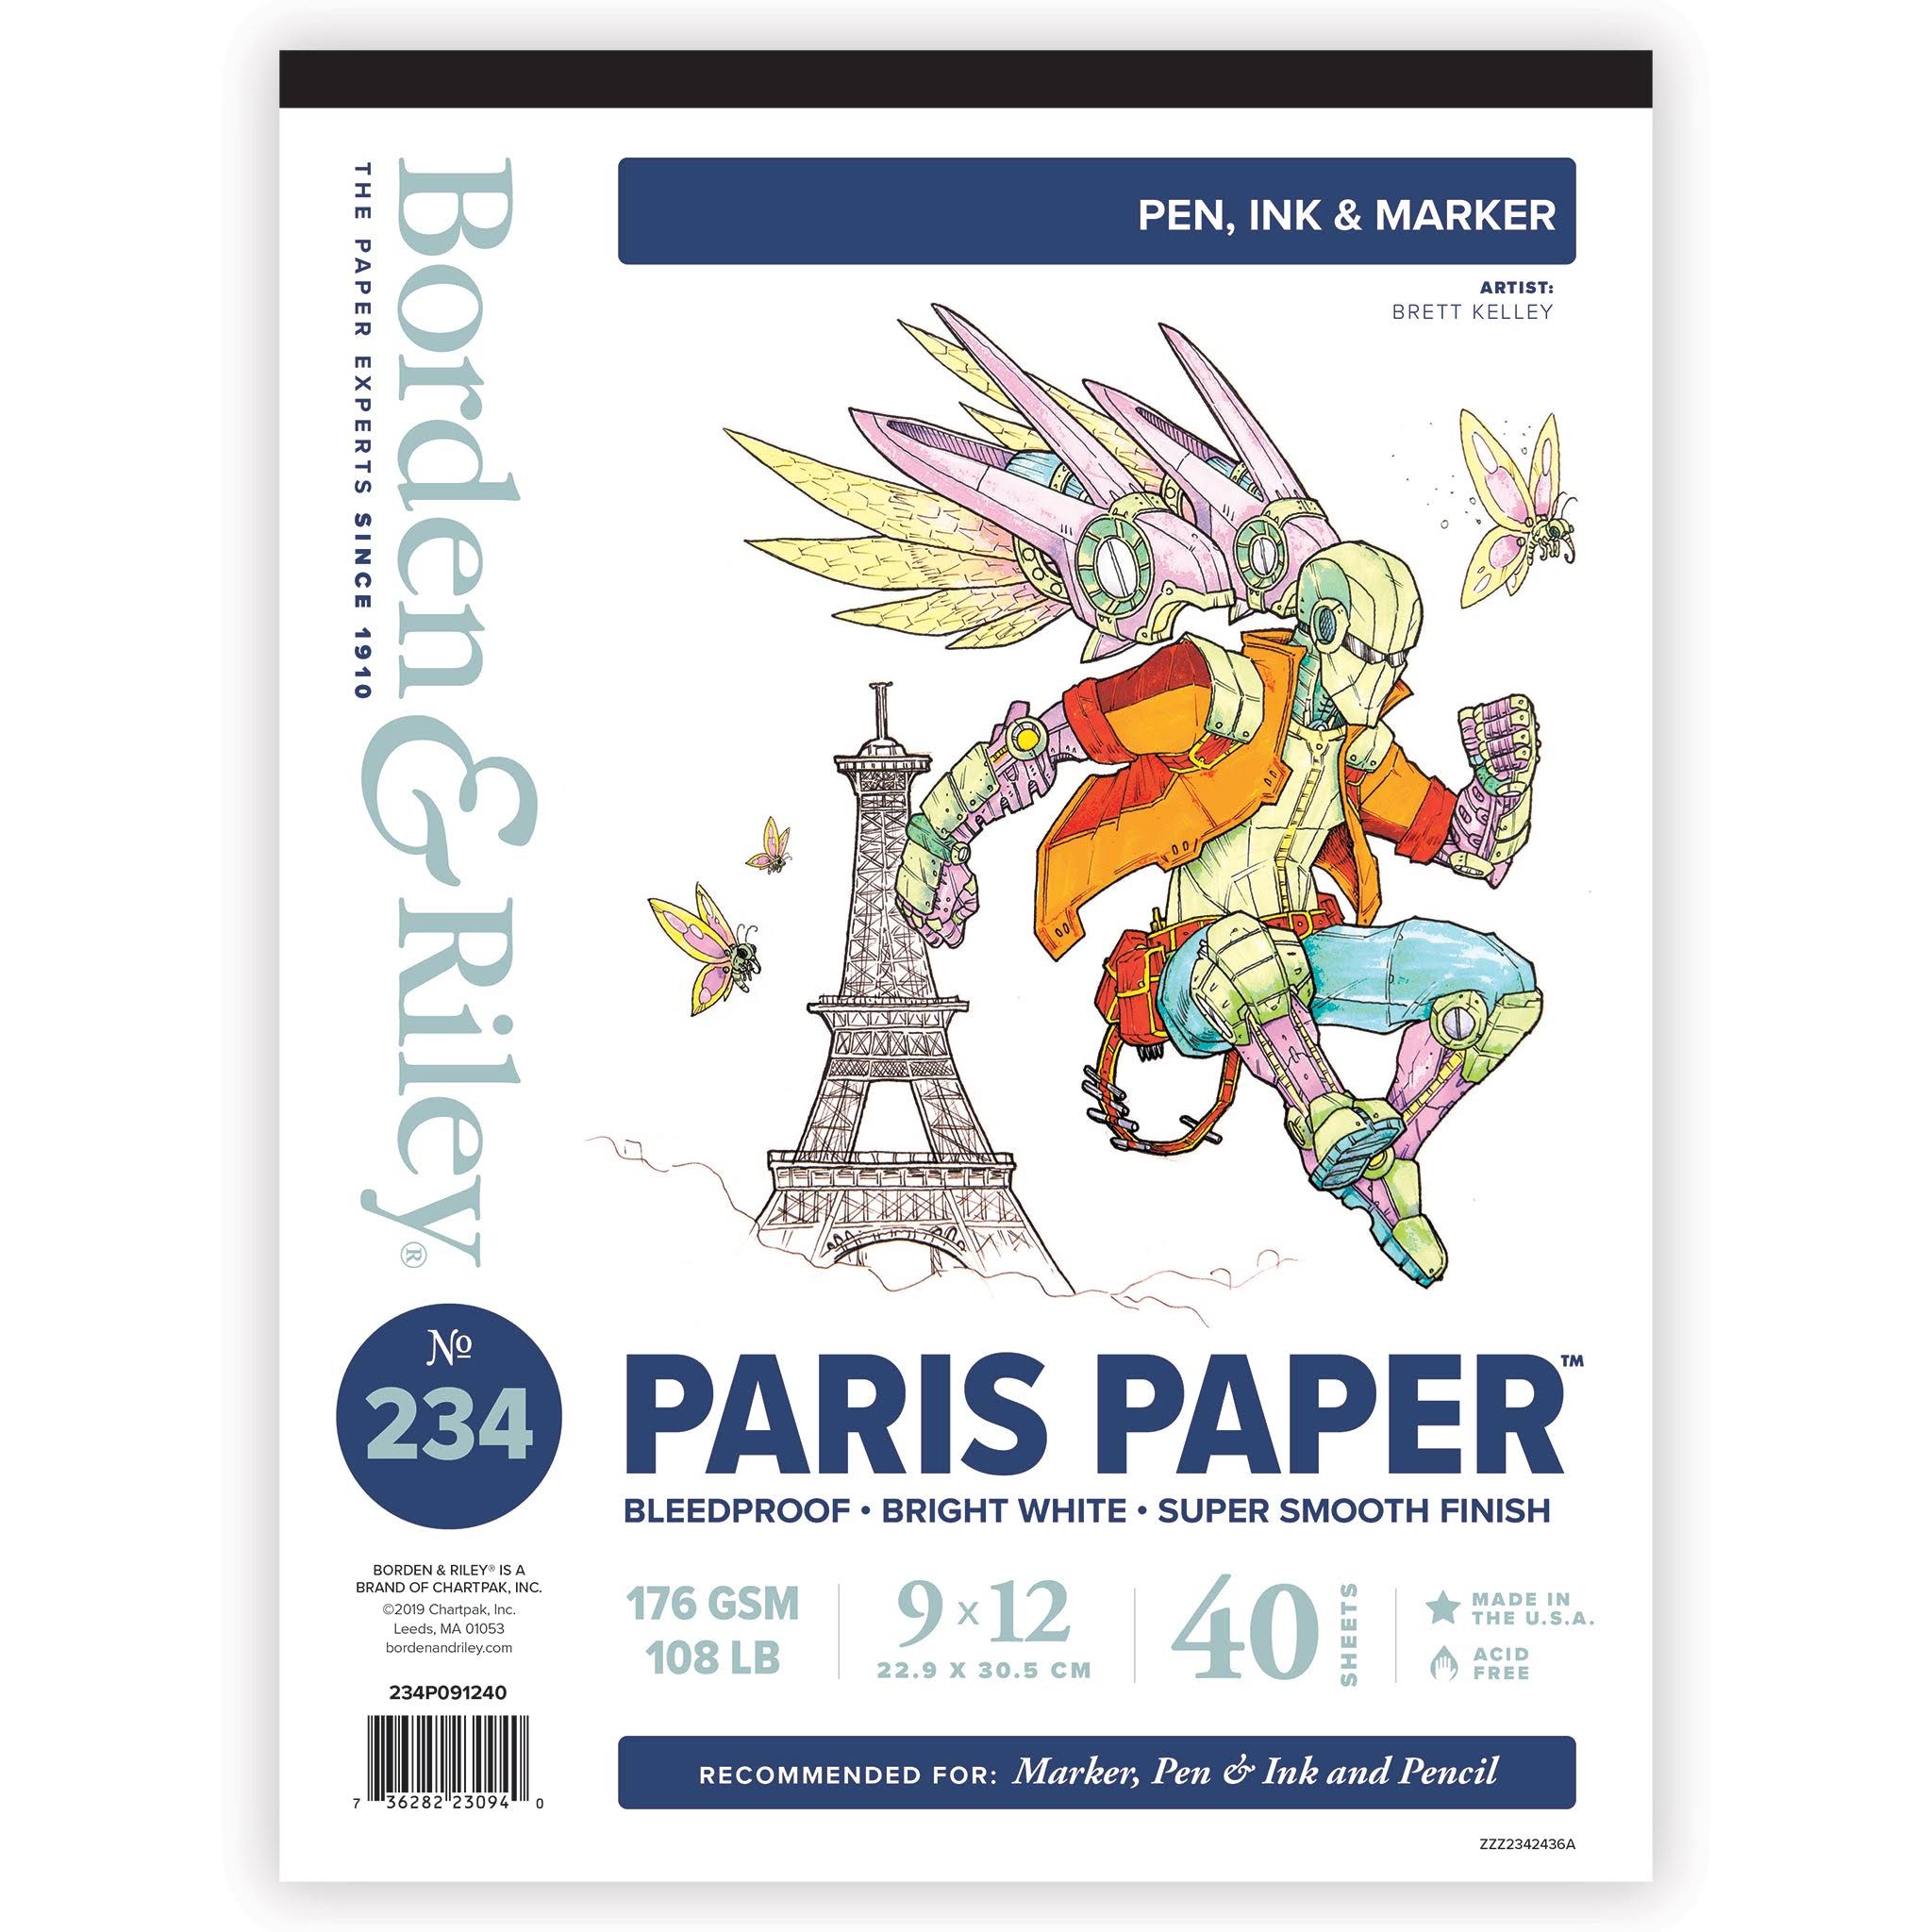 Borden & Riley #234 Paris Paper for Pens Pad